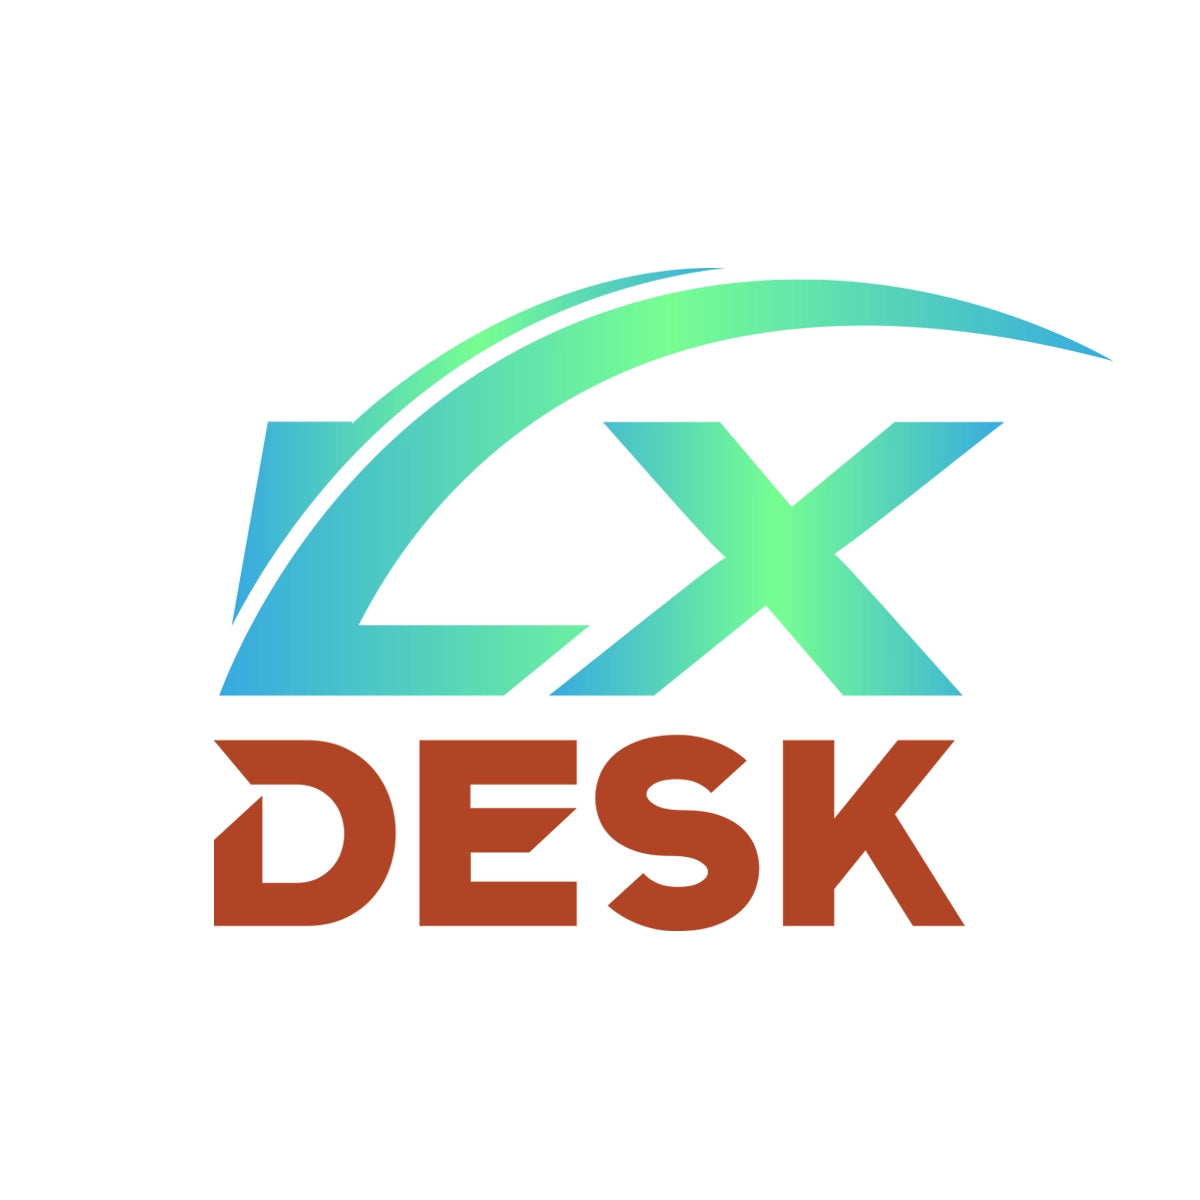 lxdesk.com